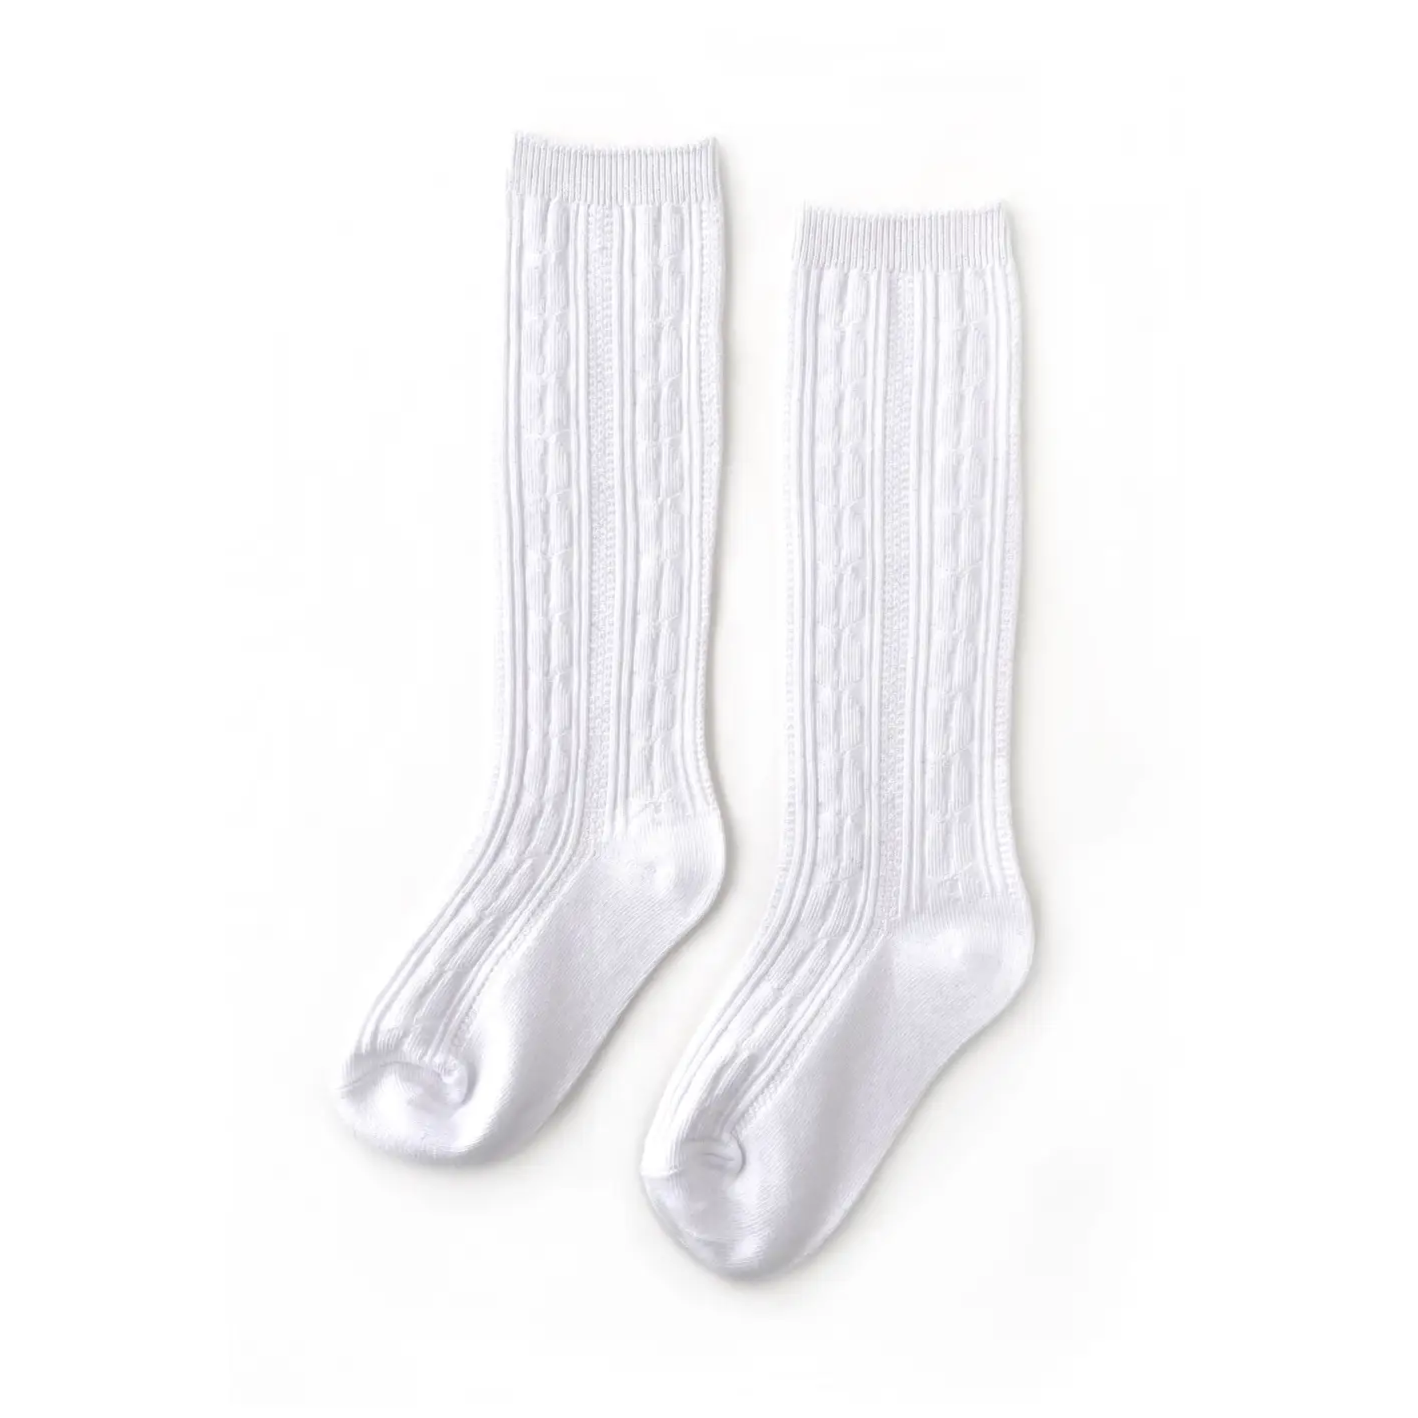 Little Stocking Co. White Knee High Socks